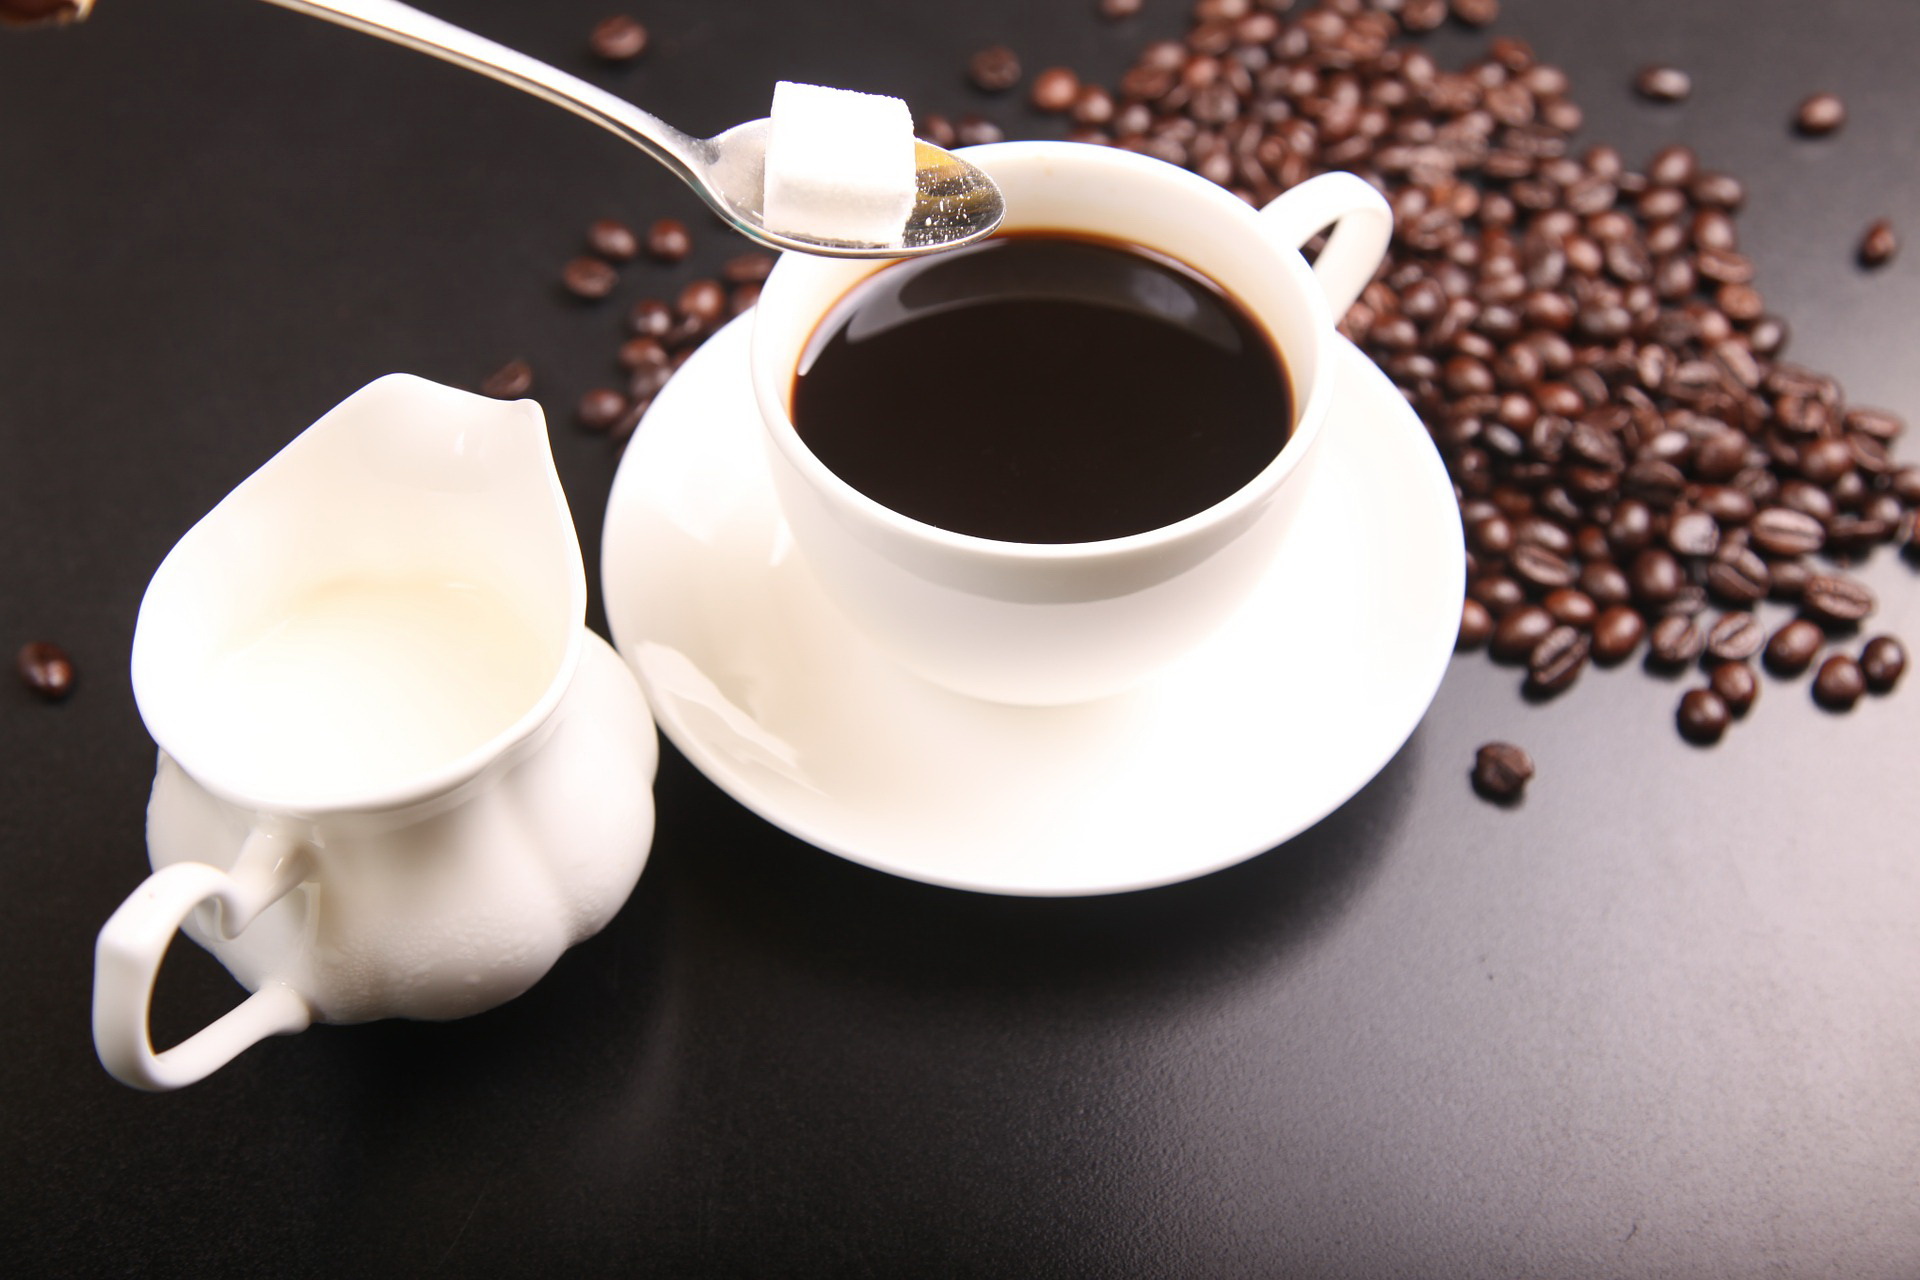 Minum kopi dalam keadaan perut kosong rupanya punya efek samping